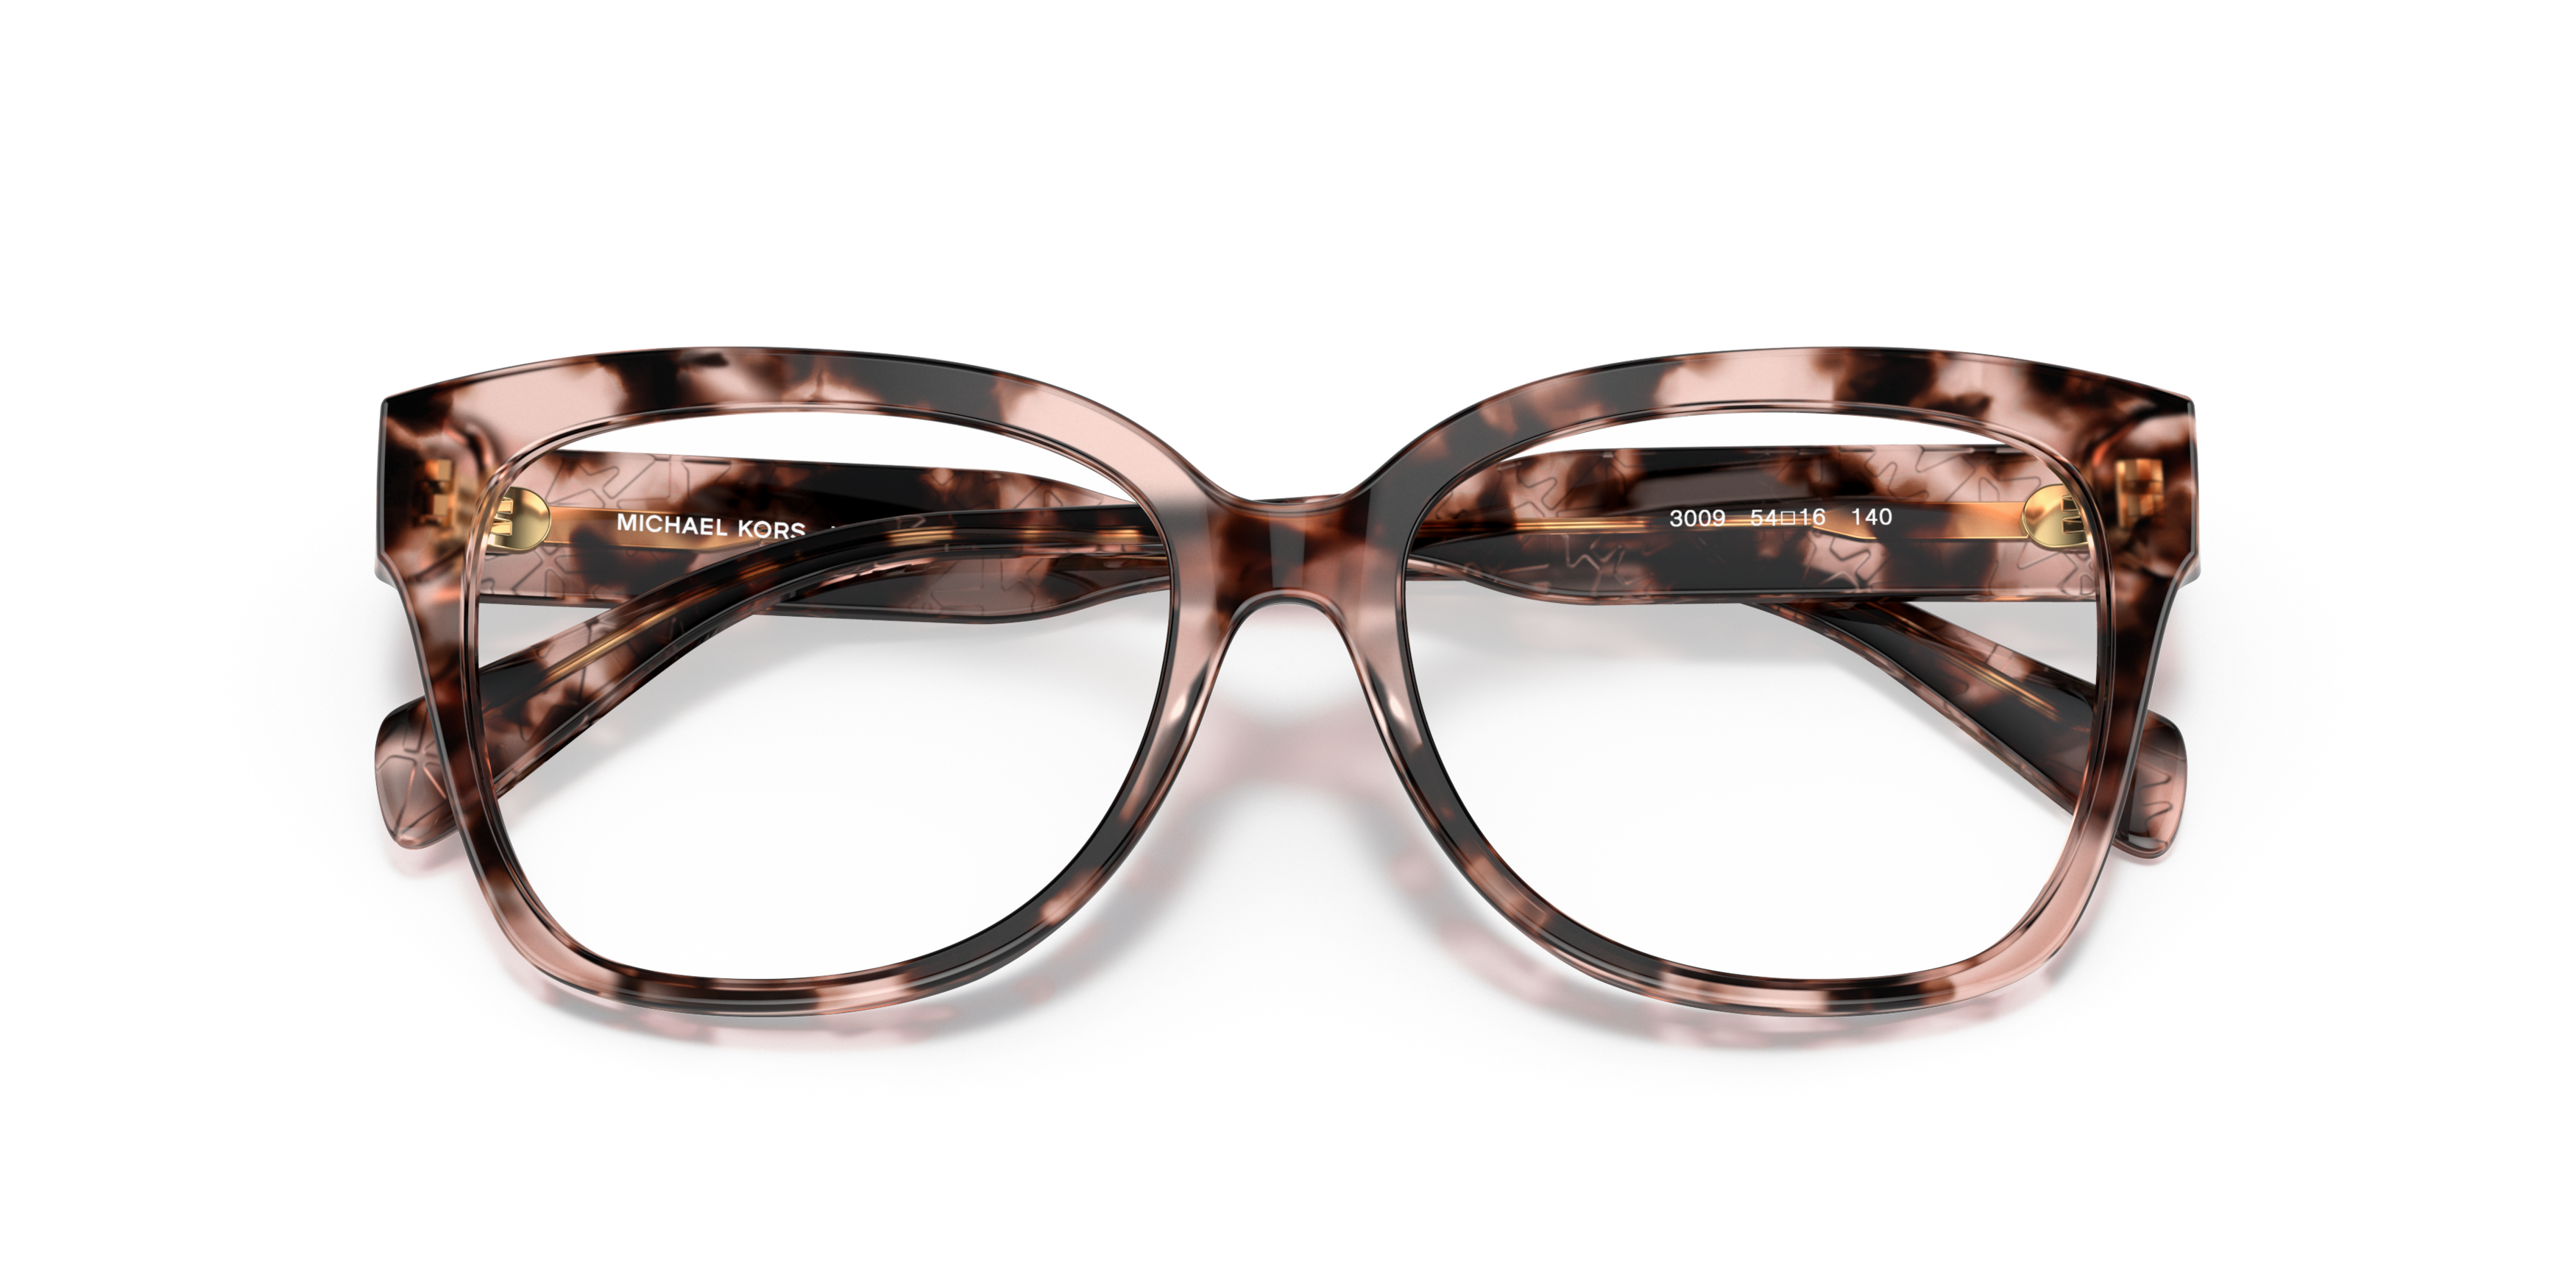 michael kors glasses clear frame